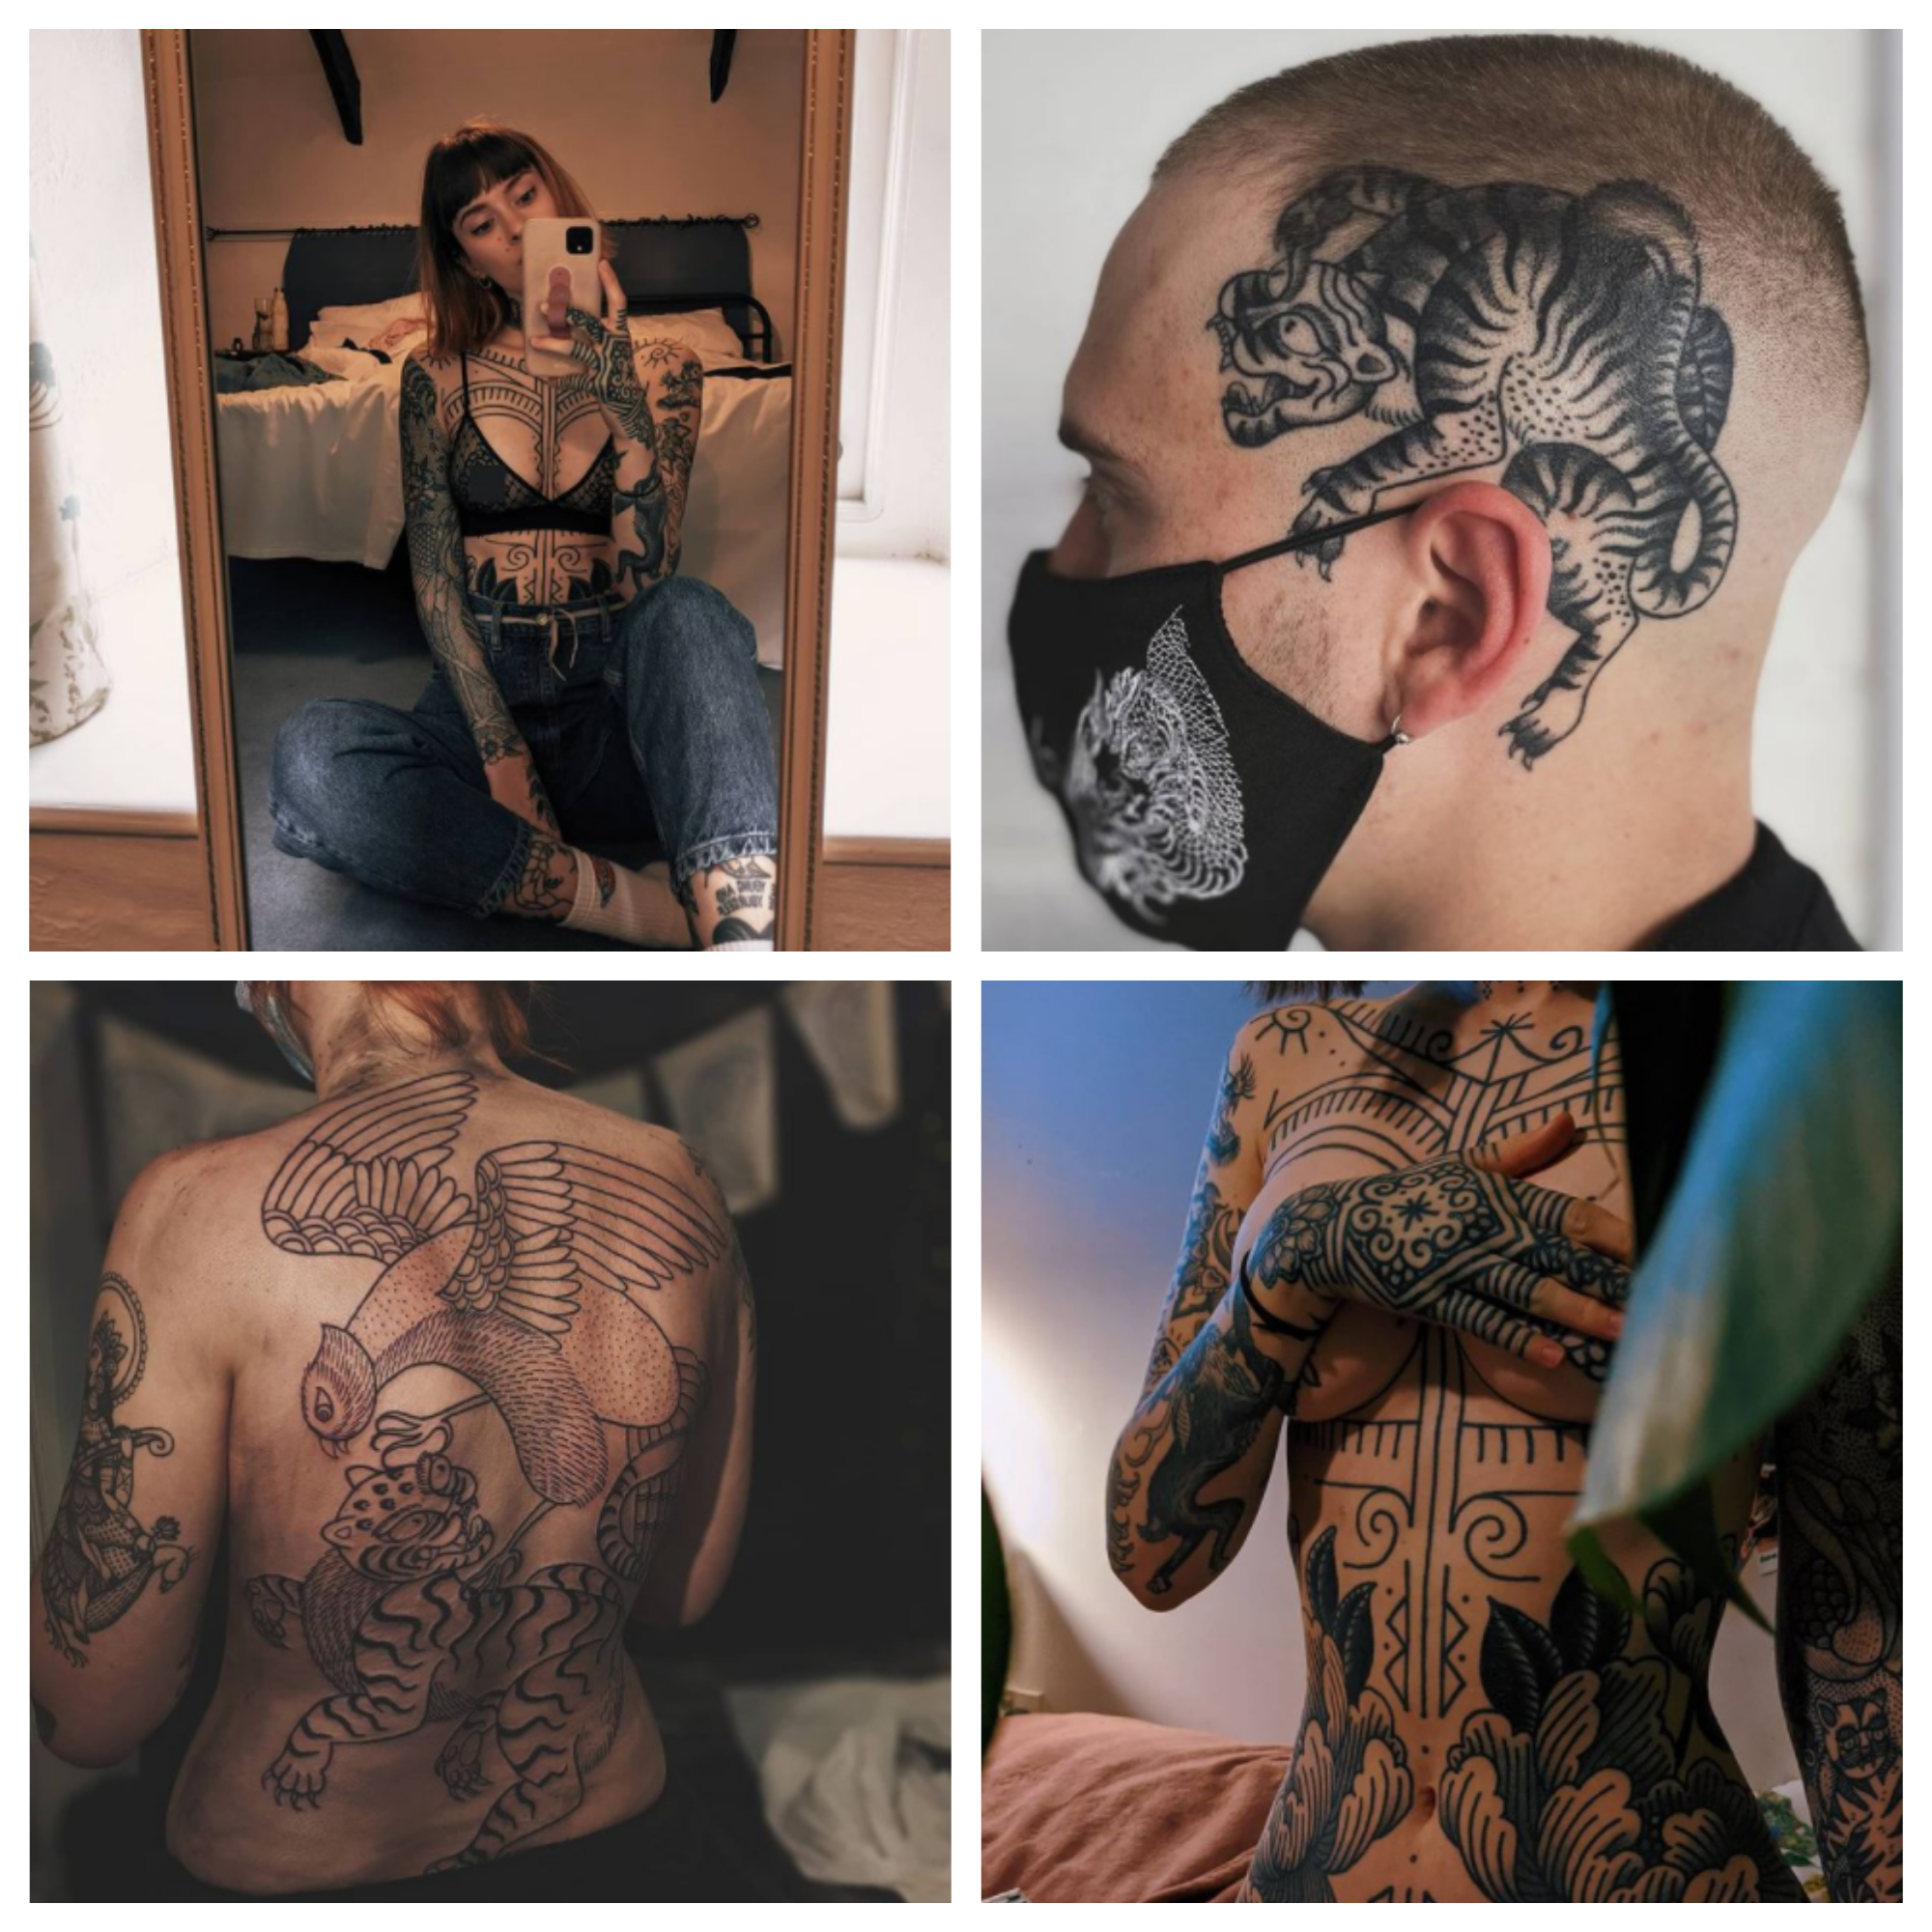 Followers wear tattoos to reflect beliefs